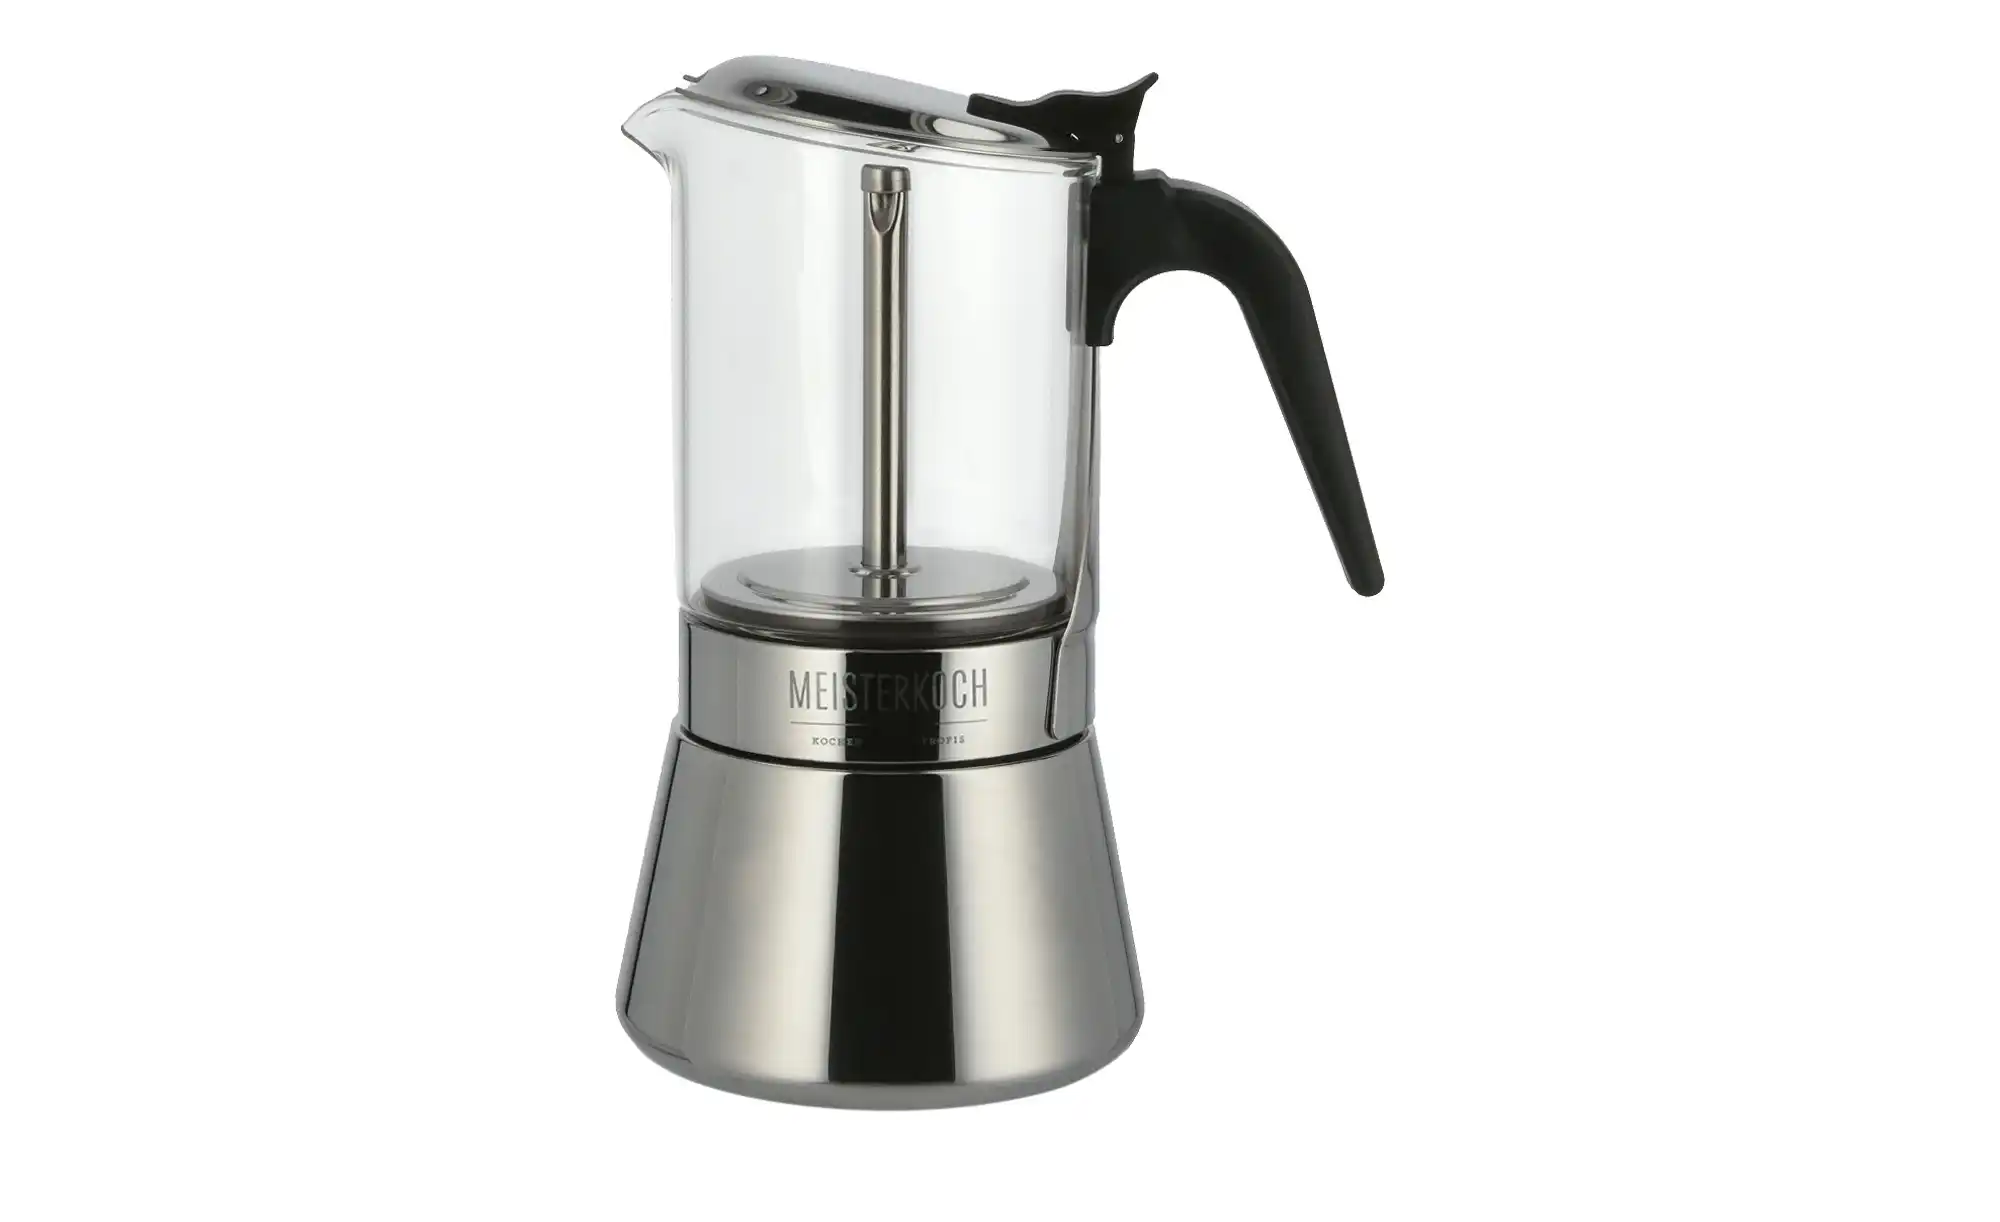 Meisterkoch Espressokocher  CENA ¦ silber ¦ Edelstahl, Glas  Ø: 16 Kaffee & Tee > Kaffeezubehör - Höffner